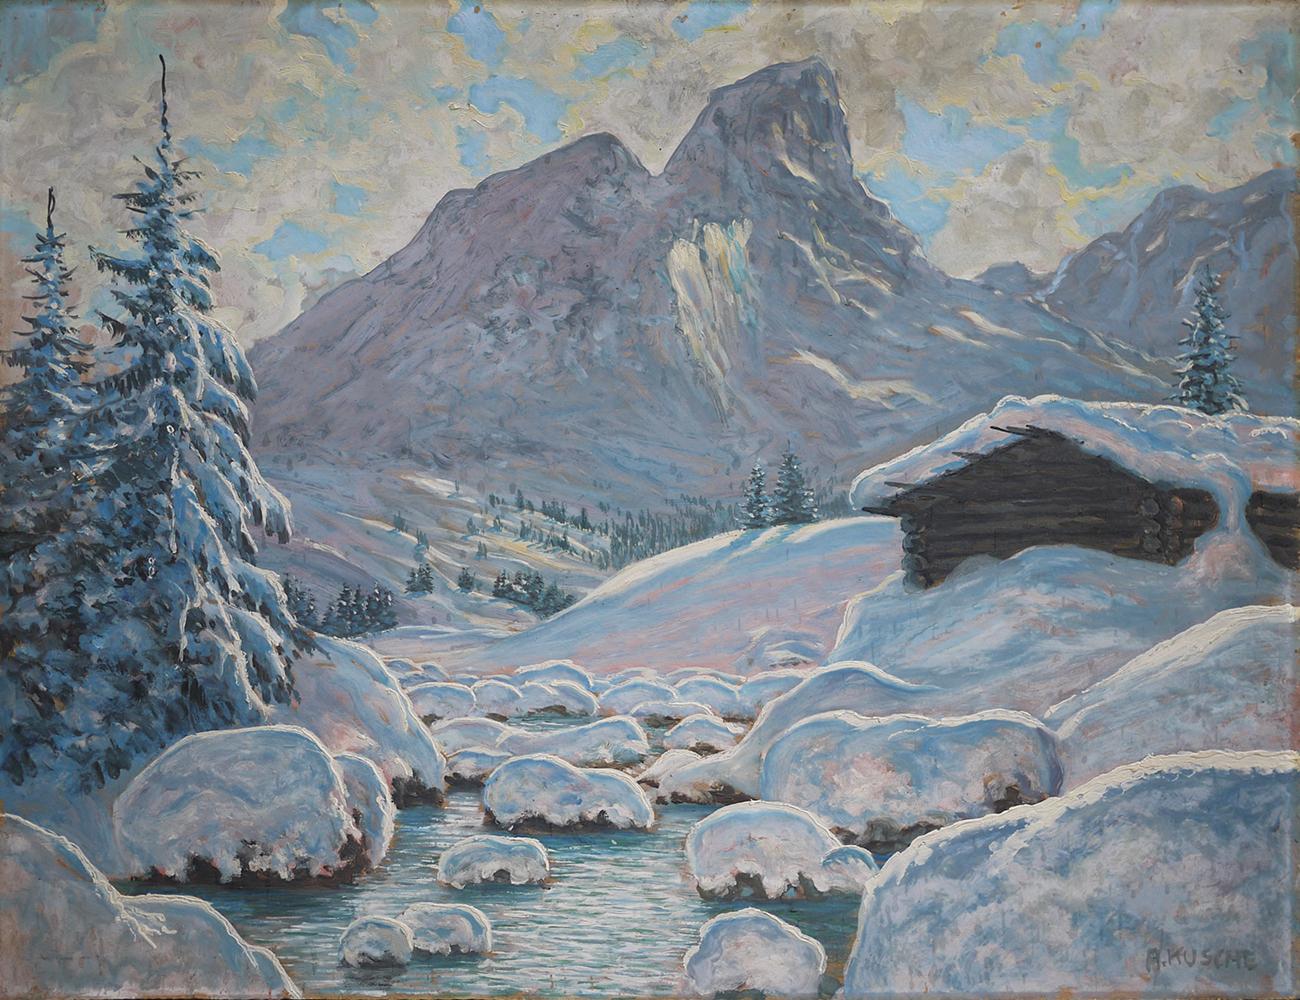 L'hiver au Tyrol - Paysage enneigé

Kusche Alfred 1884-1984

Mesures : 56 x 70 cm (les dimensions se réfèrent à la toile seulement ; le tableau est vendu avec le cadre), huile sur carton,

1920s

Disponible avec le cadre en sapin antique.